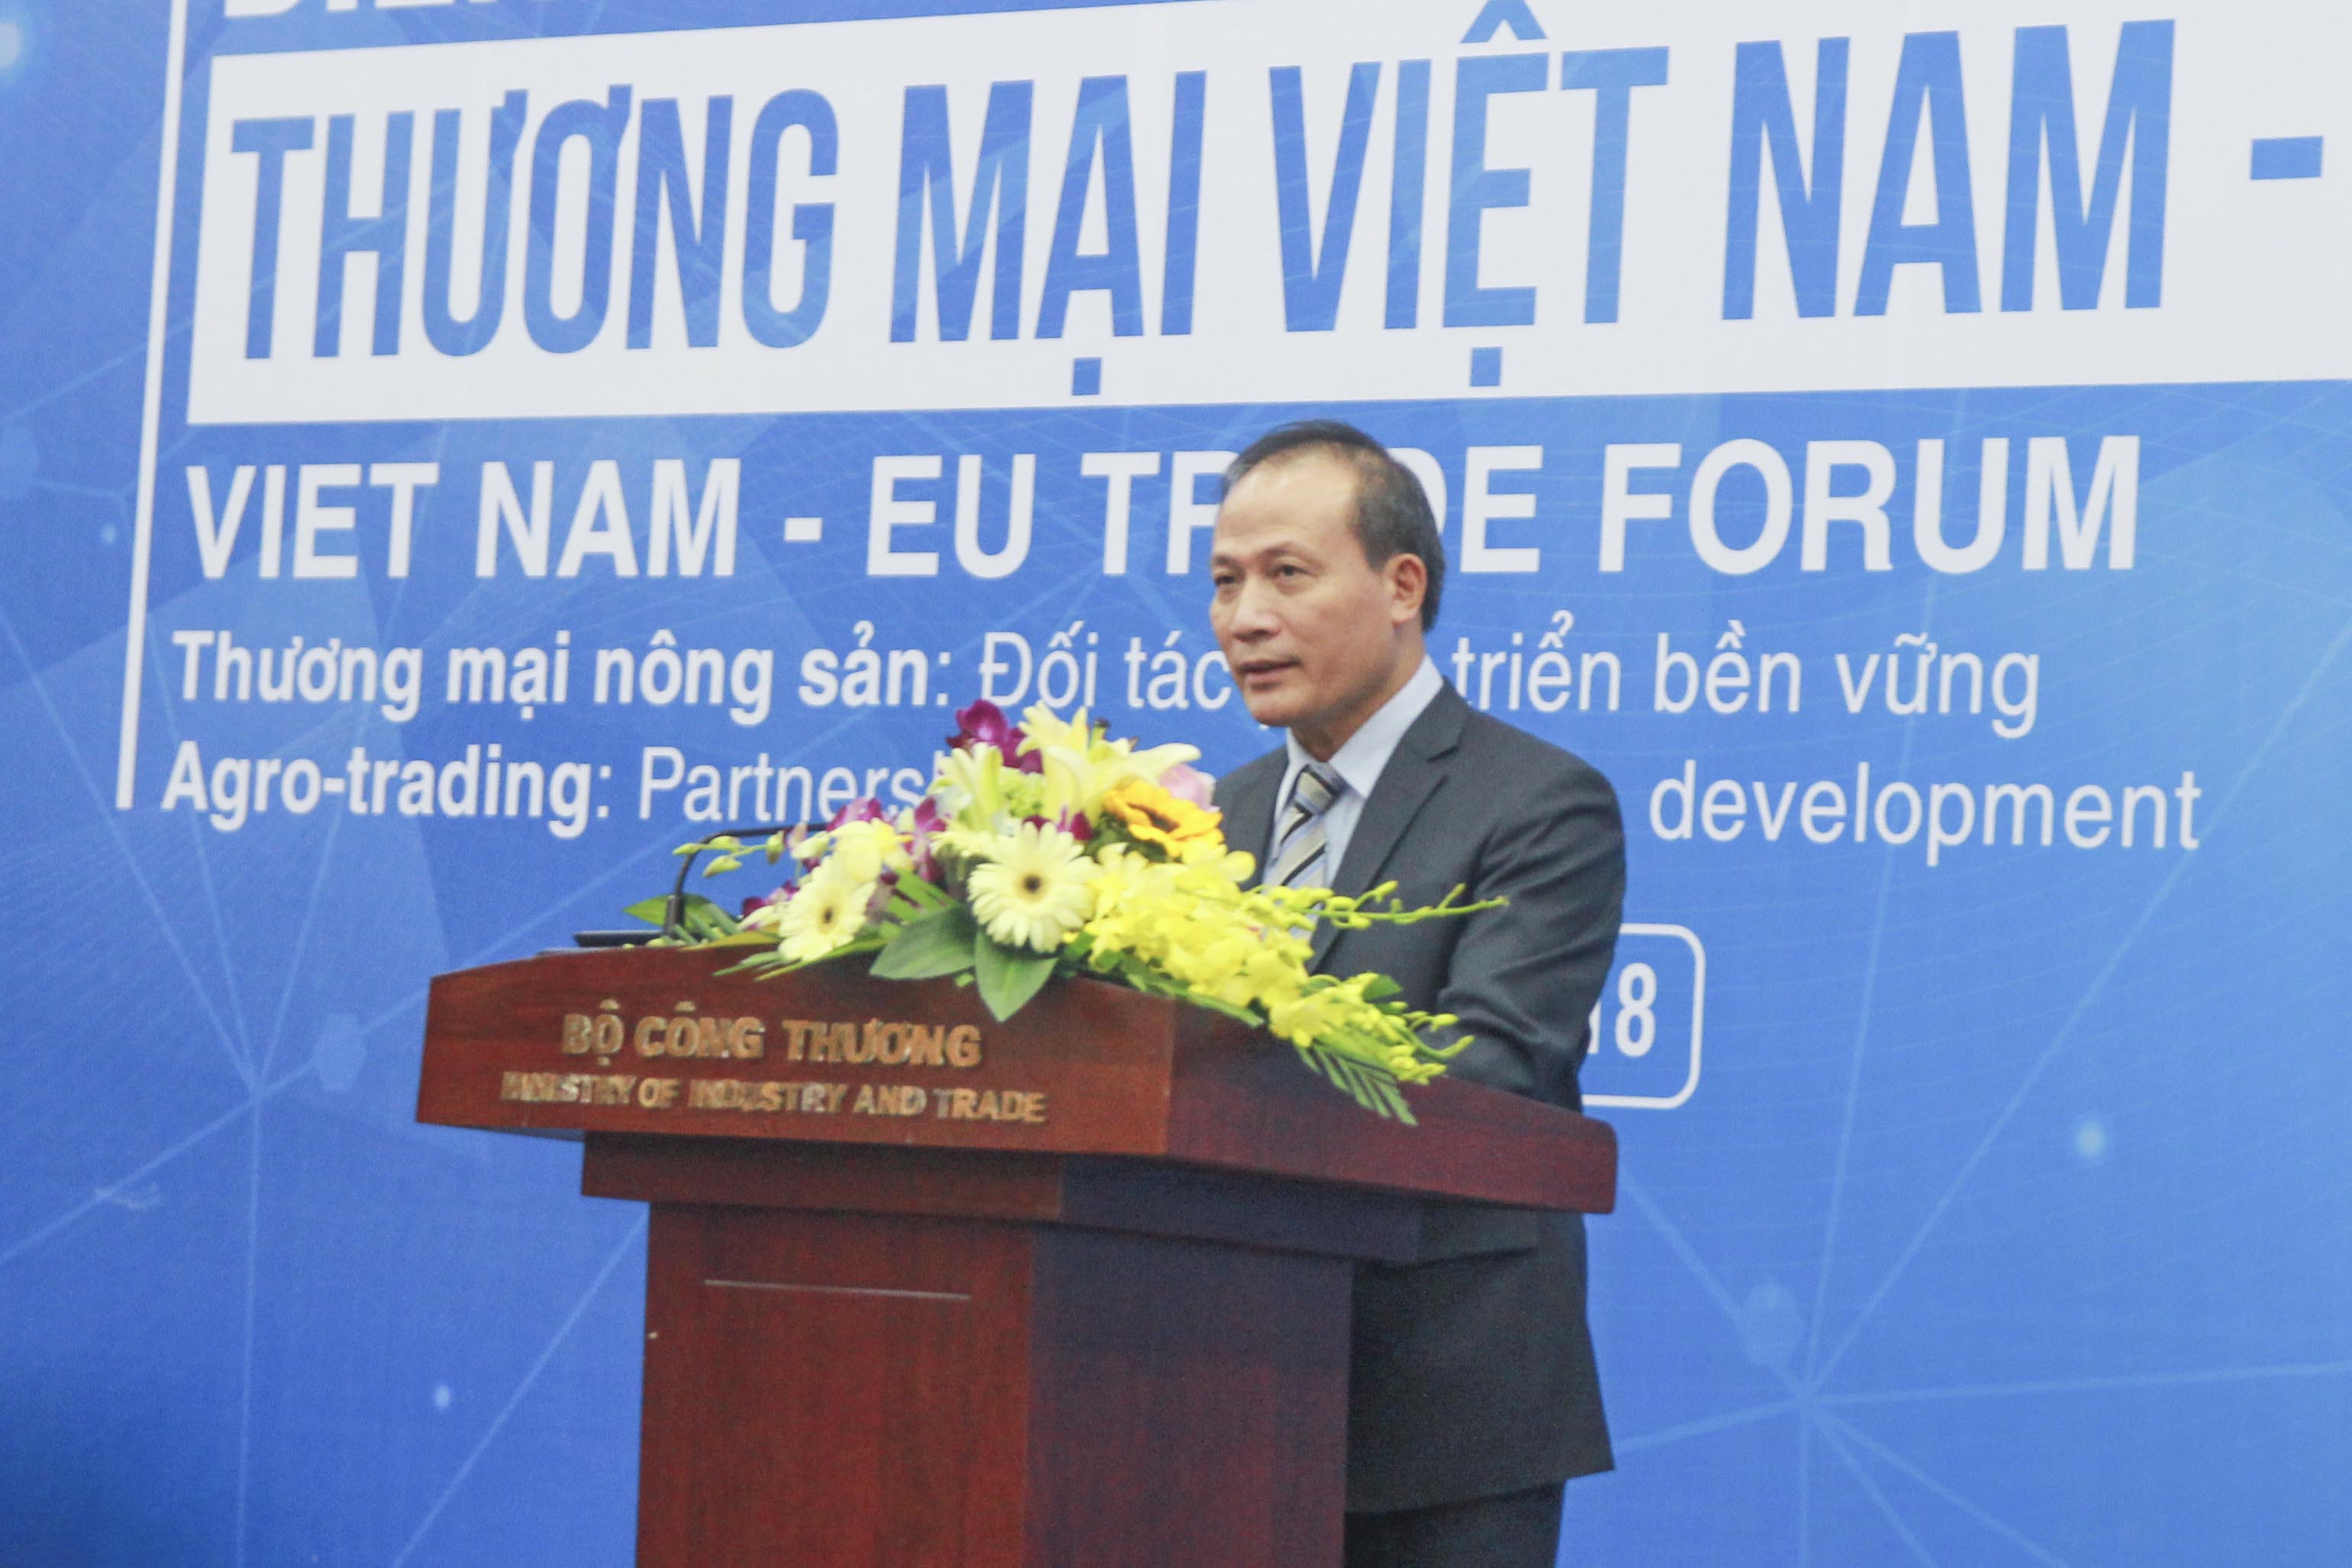 Thứ trưởng Cao Quốc Hưng phát biểu tại Diễn đàn Thương mại Việt Nam – EU với chủ đề “Thương mại Nông sản Việt Nam – EU: Đối tác phát triển bền vững” tổ chức sáng 6/12/2018 tại Hà Nội.